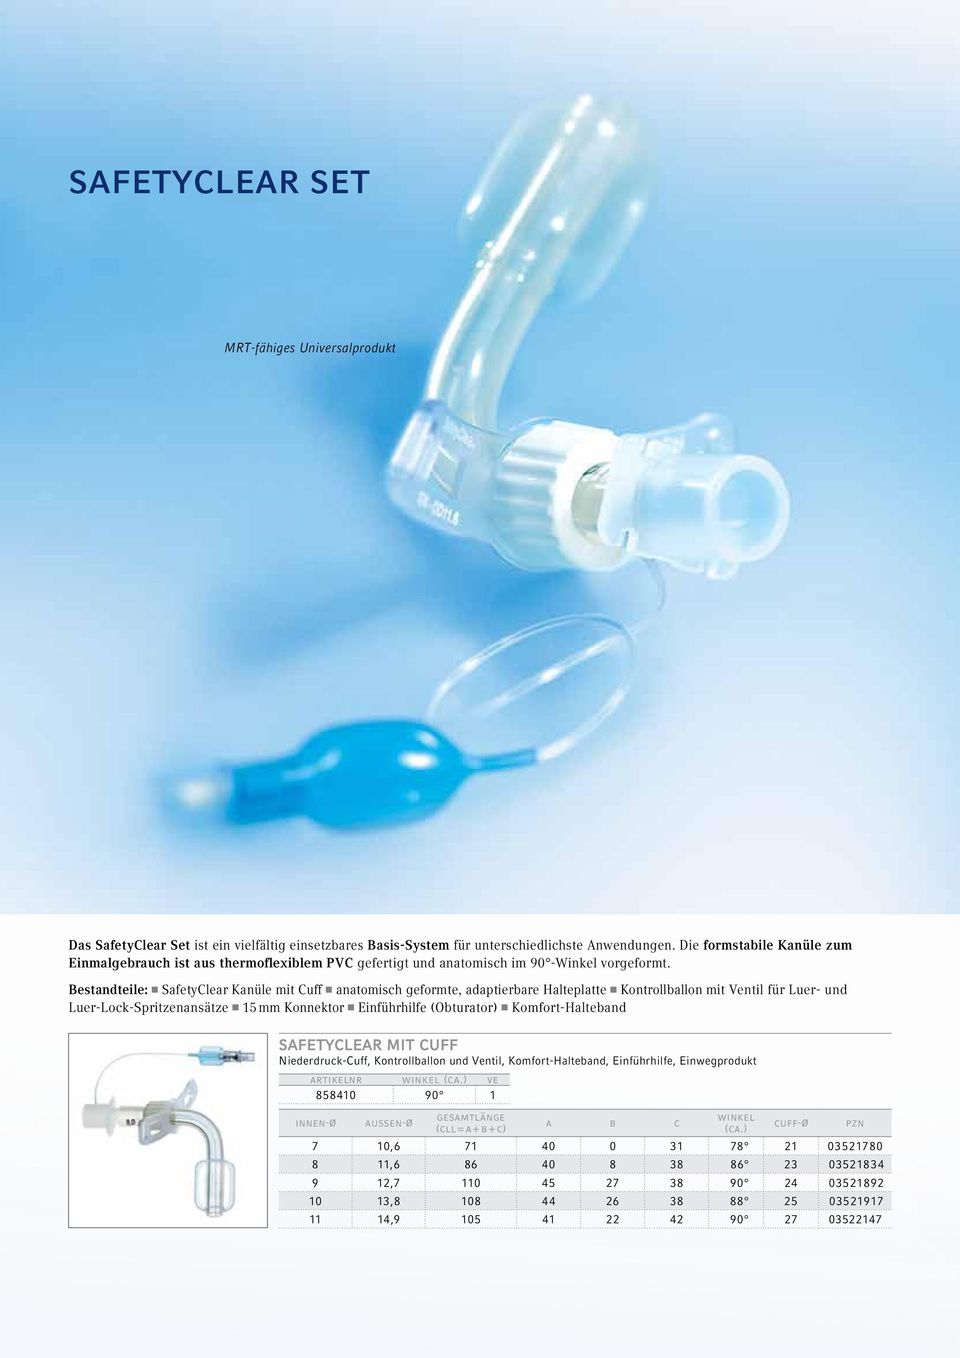 Bestandteile: SafetyClear Kanüle mit Cuff anatomisch geformte, adaptierbare Halteplatte Kontrollballon mit Ventil für Luer- und Luer-Lock-Spritzenansätze 15 mm Konnektor Einführhilfe (Obturator)